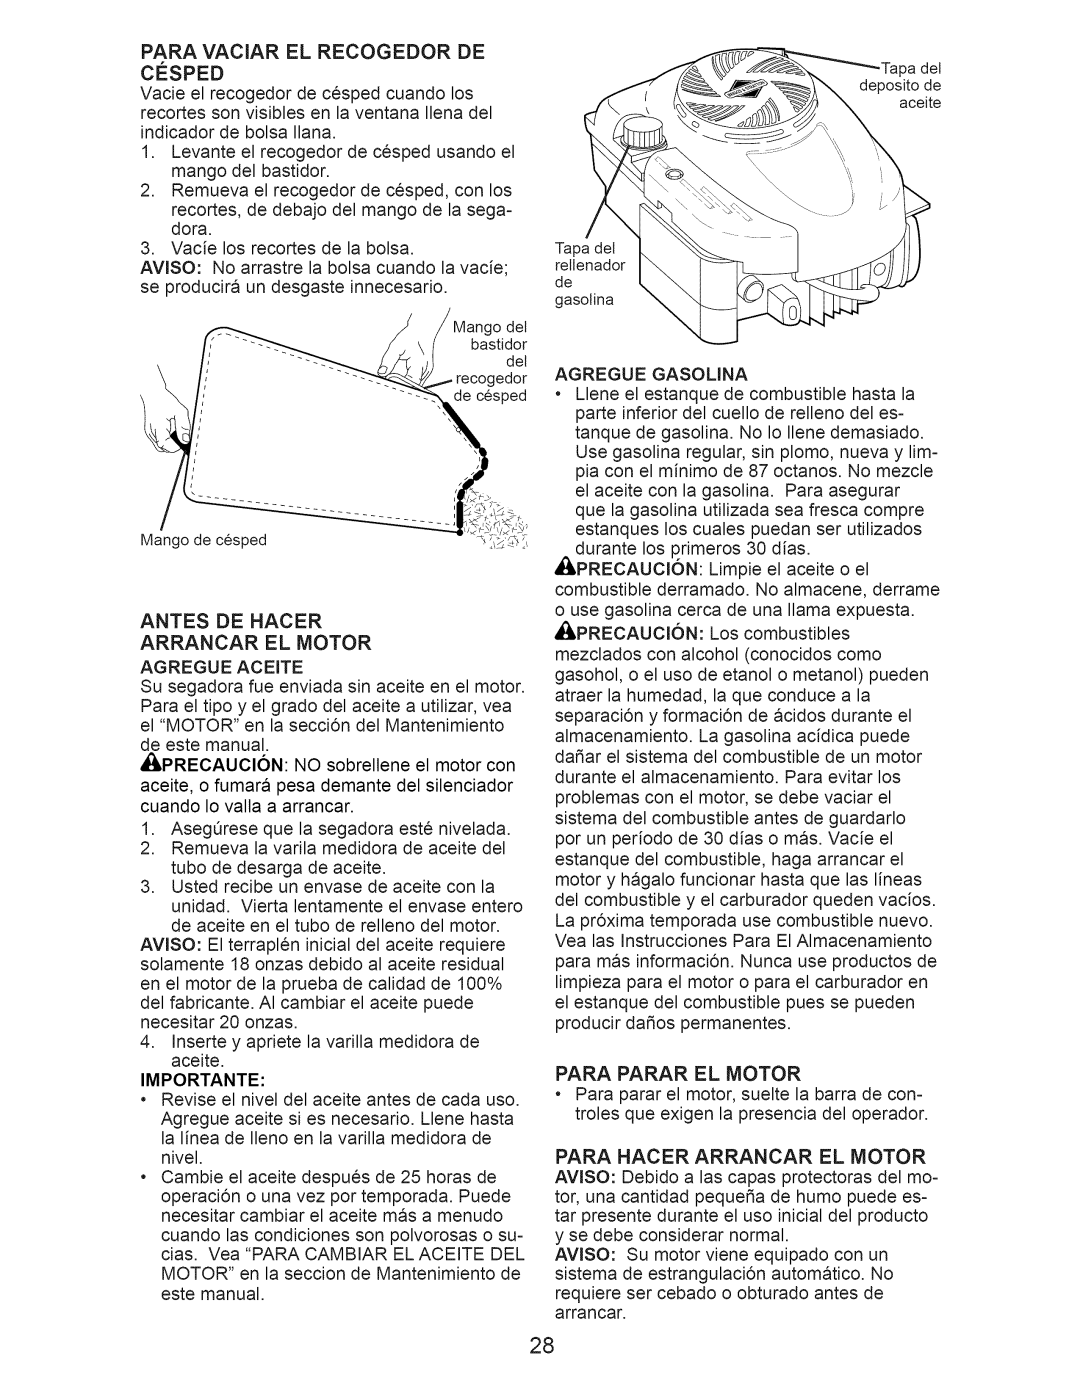 Craftsman 917.374353 owner manual Antes De Hacer Arrancar El Motor, Importante, Para Parar El Motor 